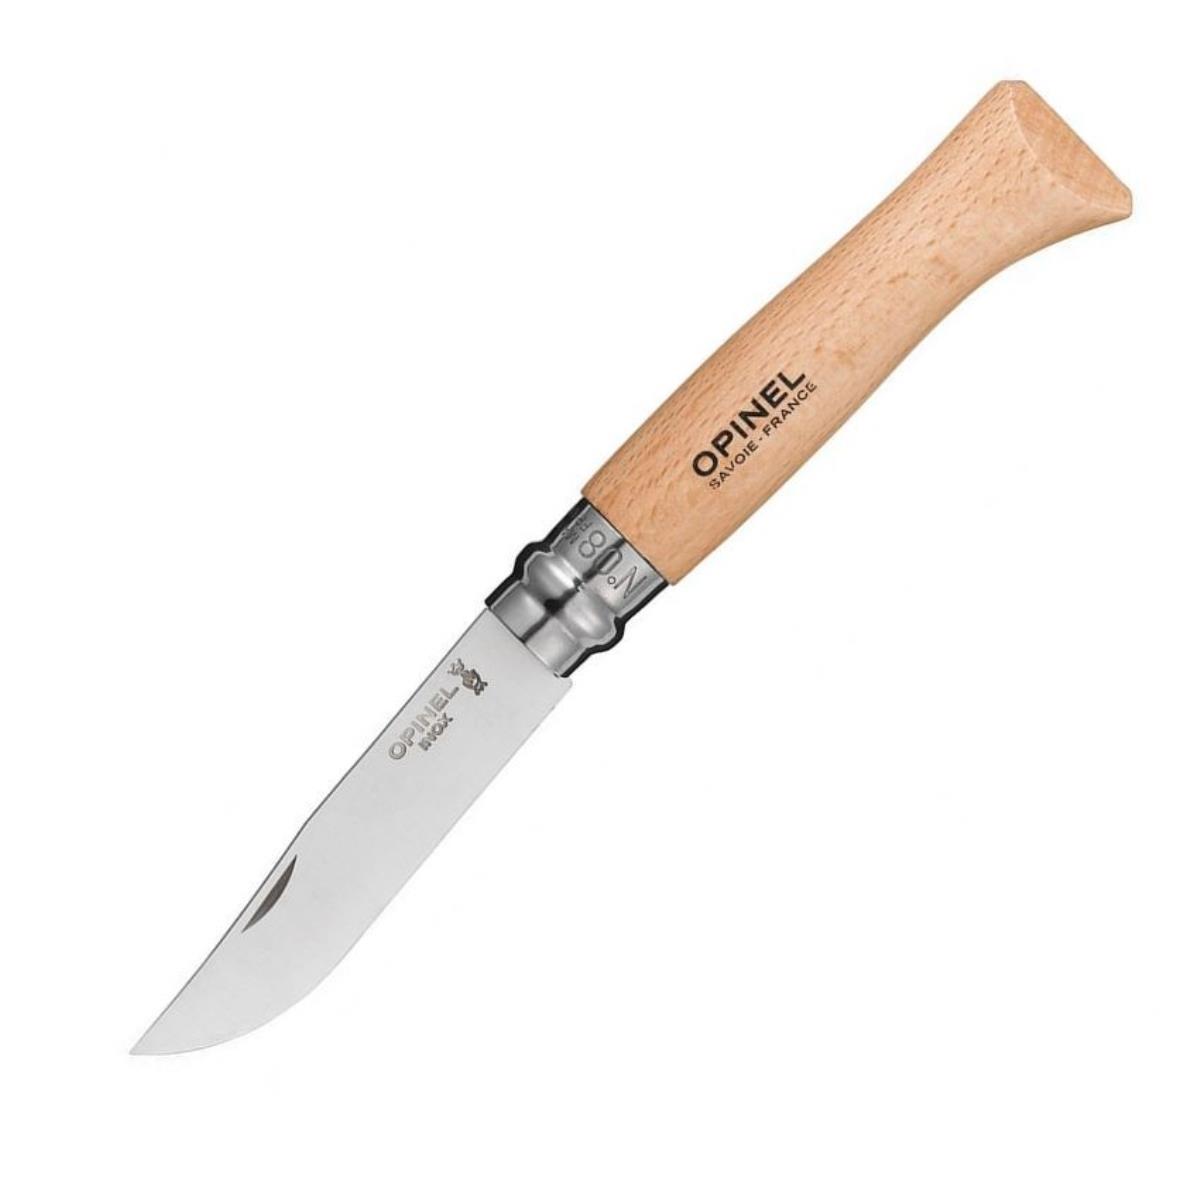 Нож №8 VRI Tradition Inox (нерж.сталь, рукоять бук, длина клинка 8,5 см) 1230805 OPINEL набор из 3 х кухонных ножей samura mo v в подарочной коробке поварская тройка сталь aus 8 рукоять g10